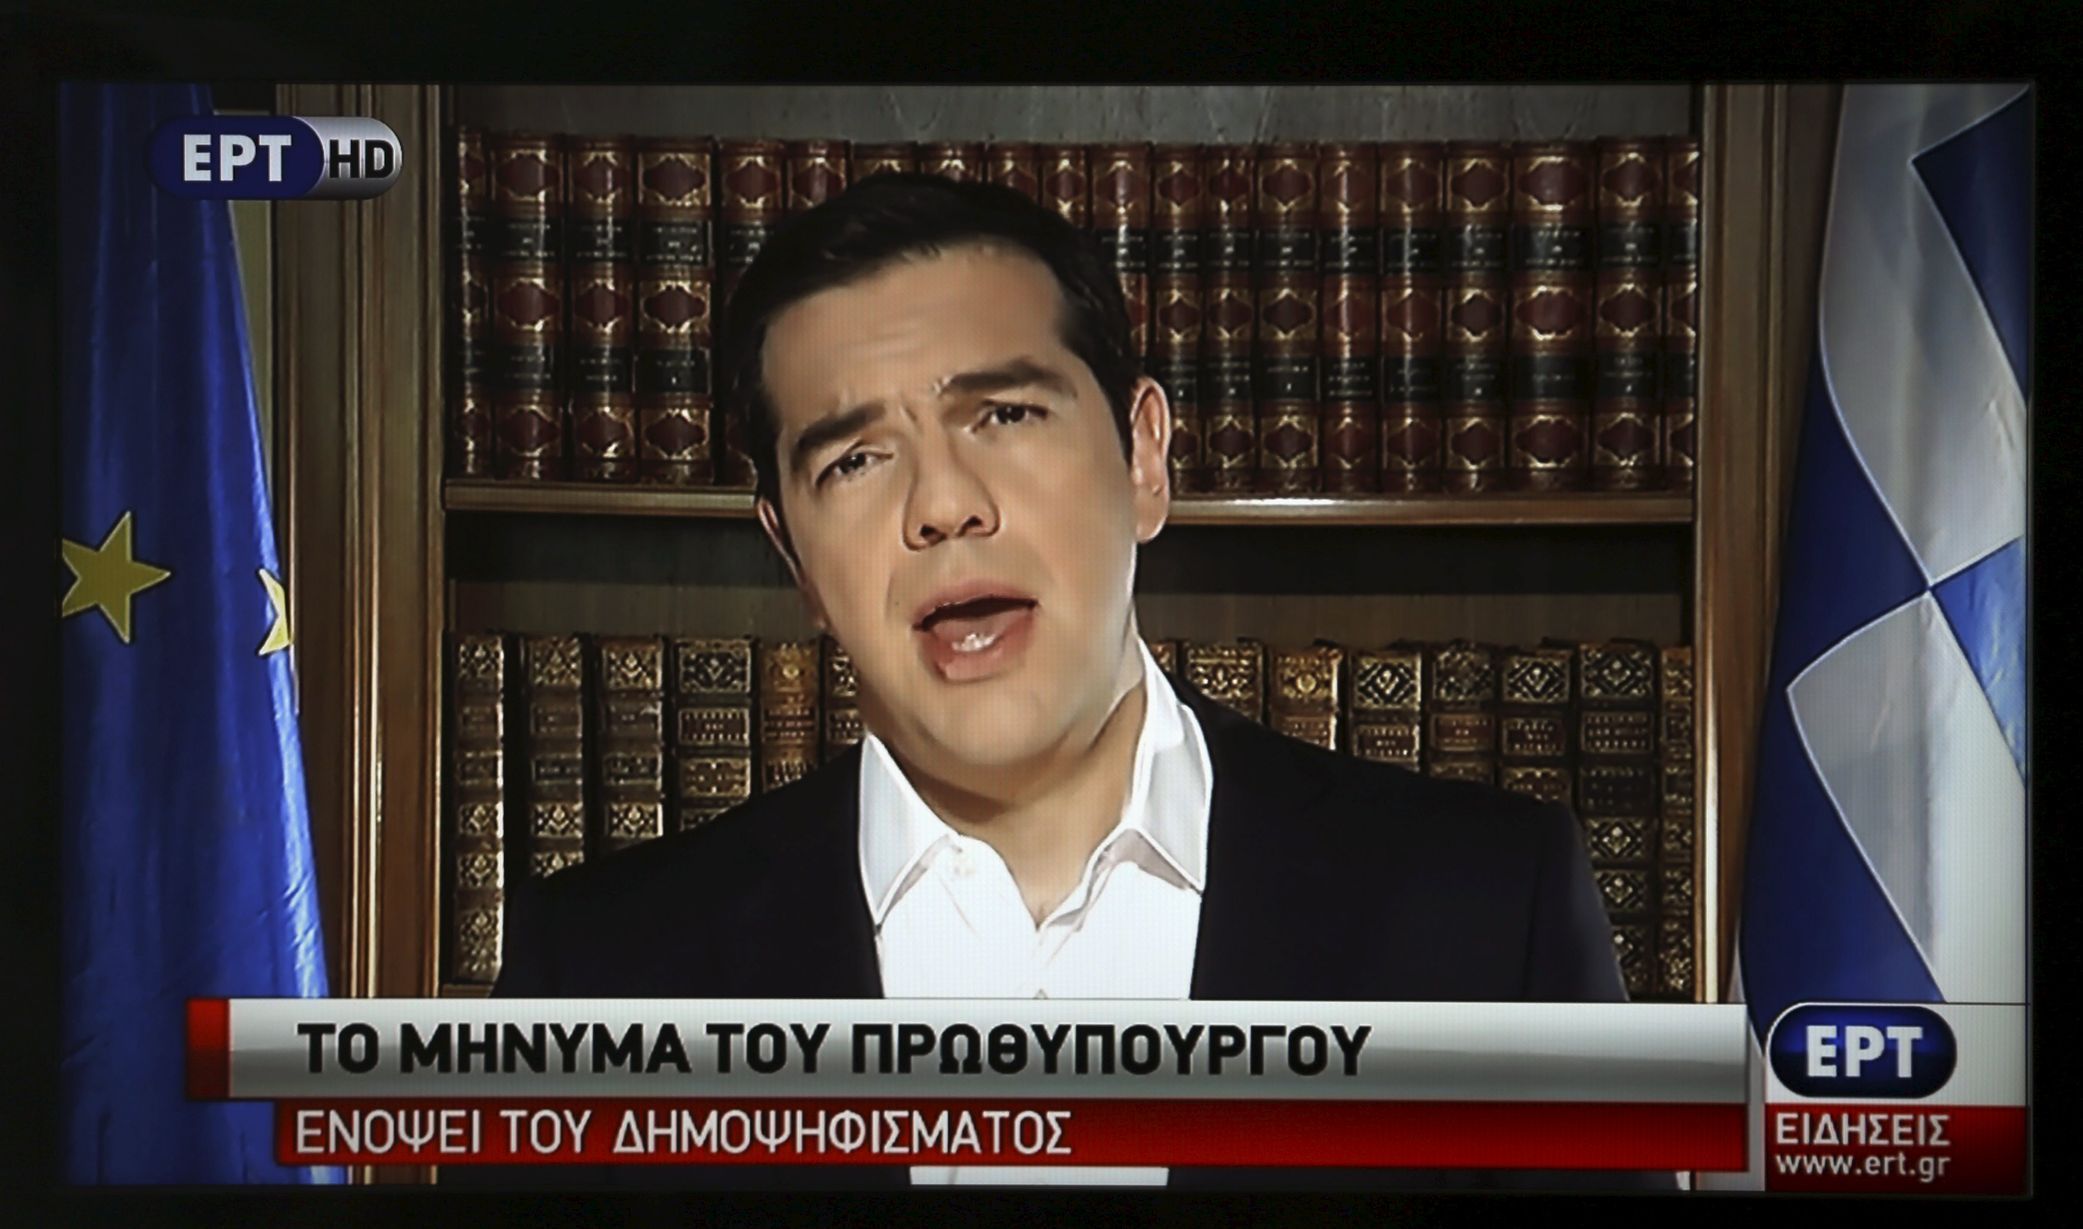 Alexis Tsipras v dnešním televizním projevu.